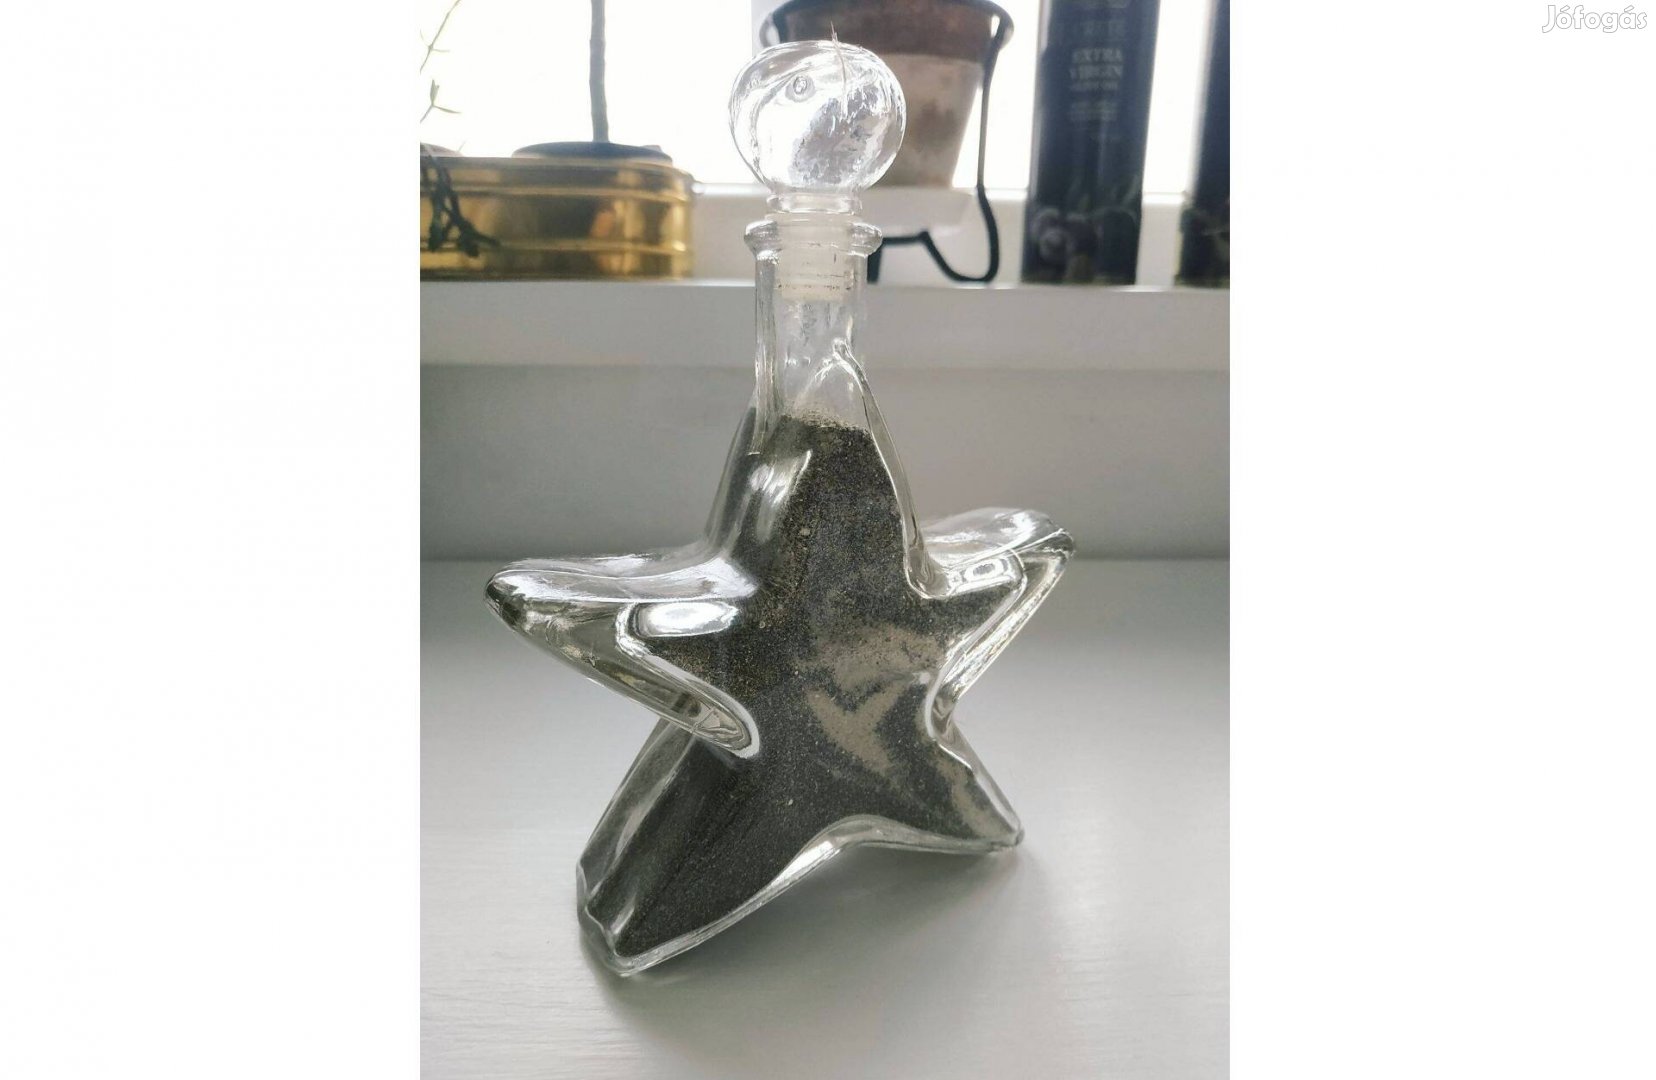 Csillag alakú üveg, dekoratív homokkal töltve